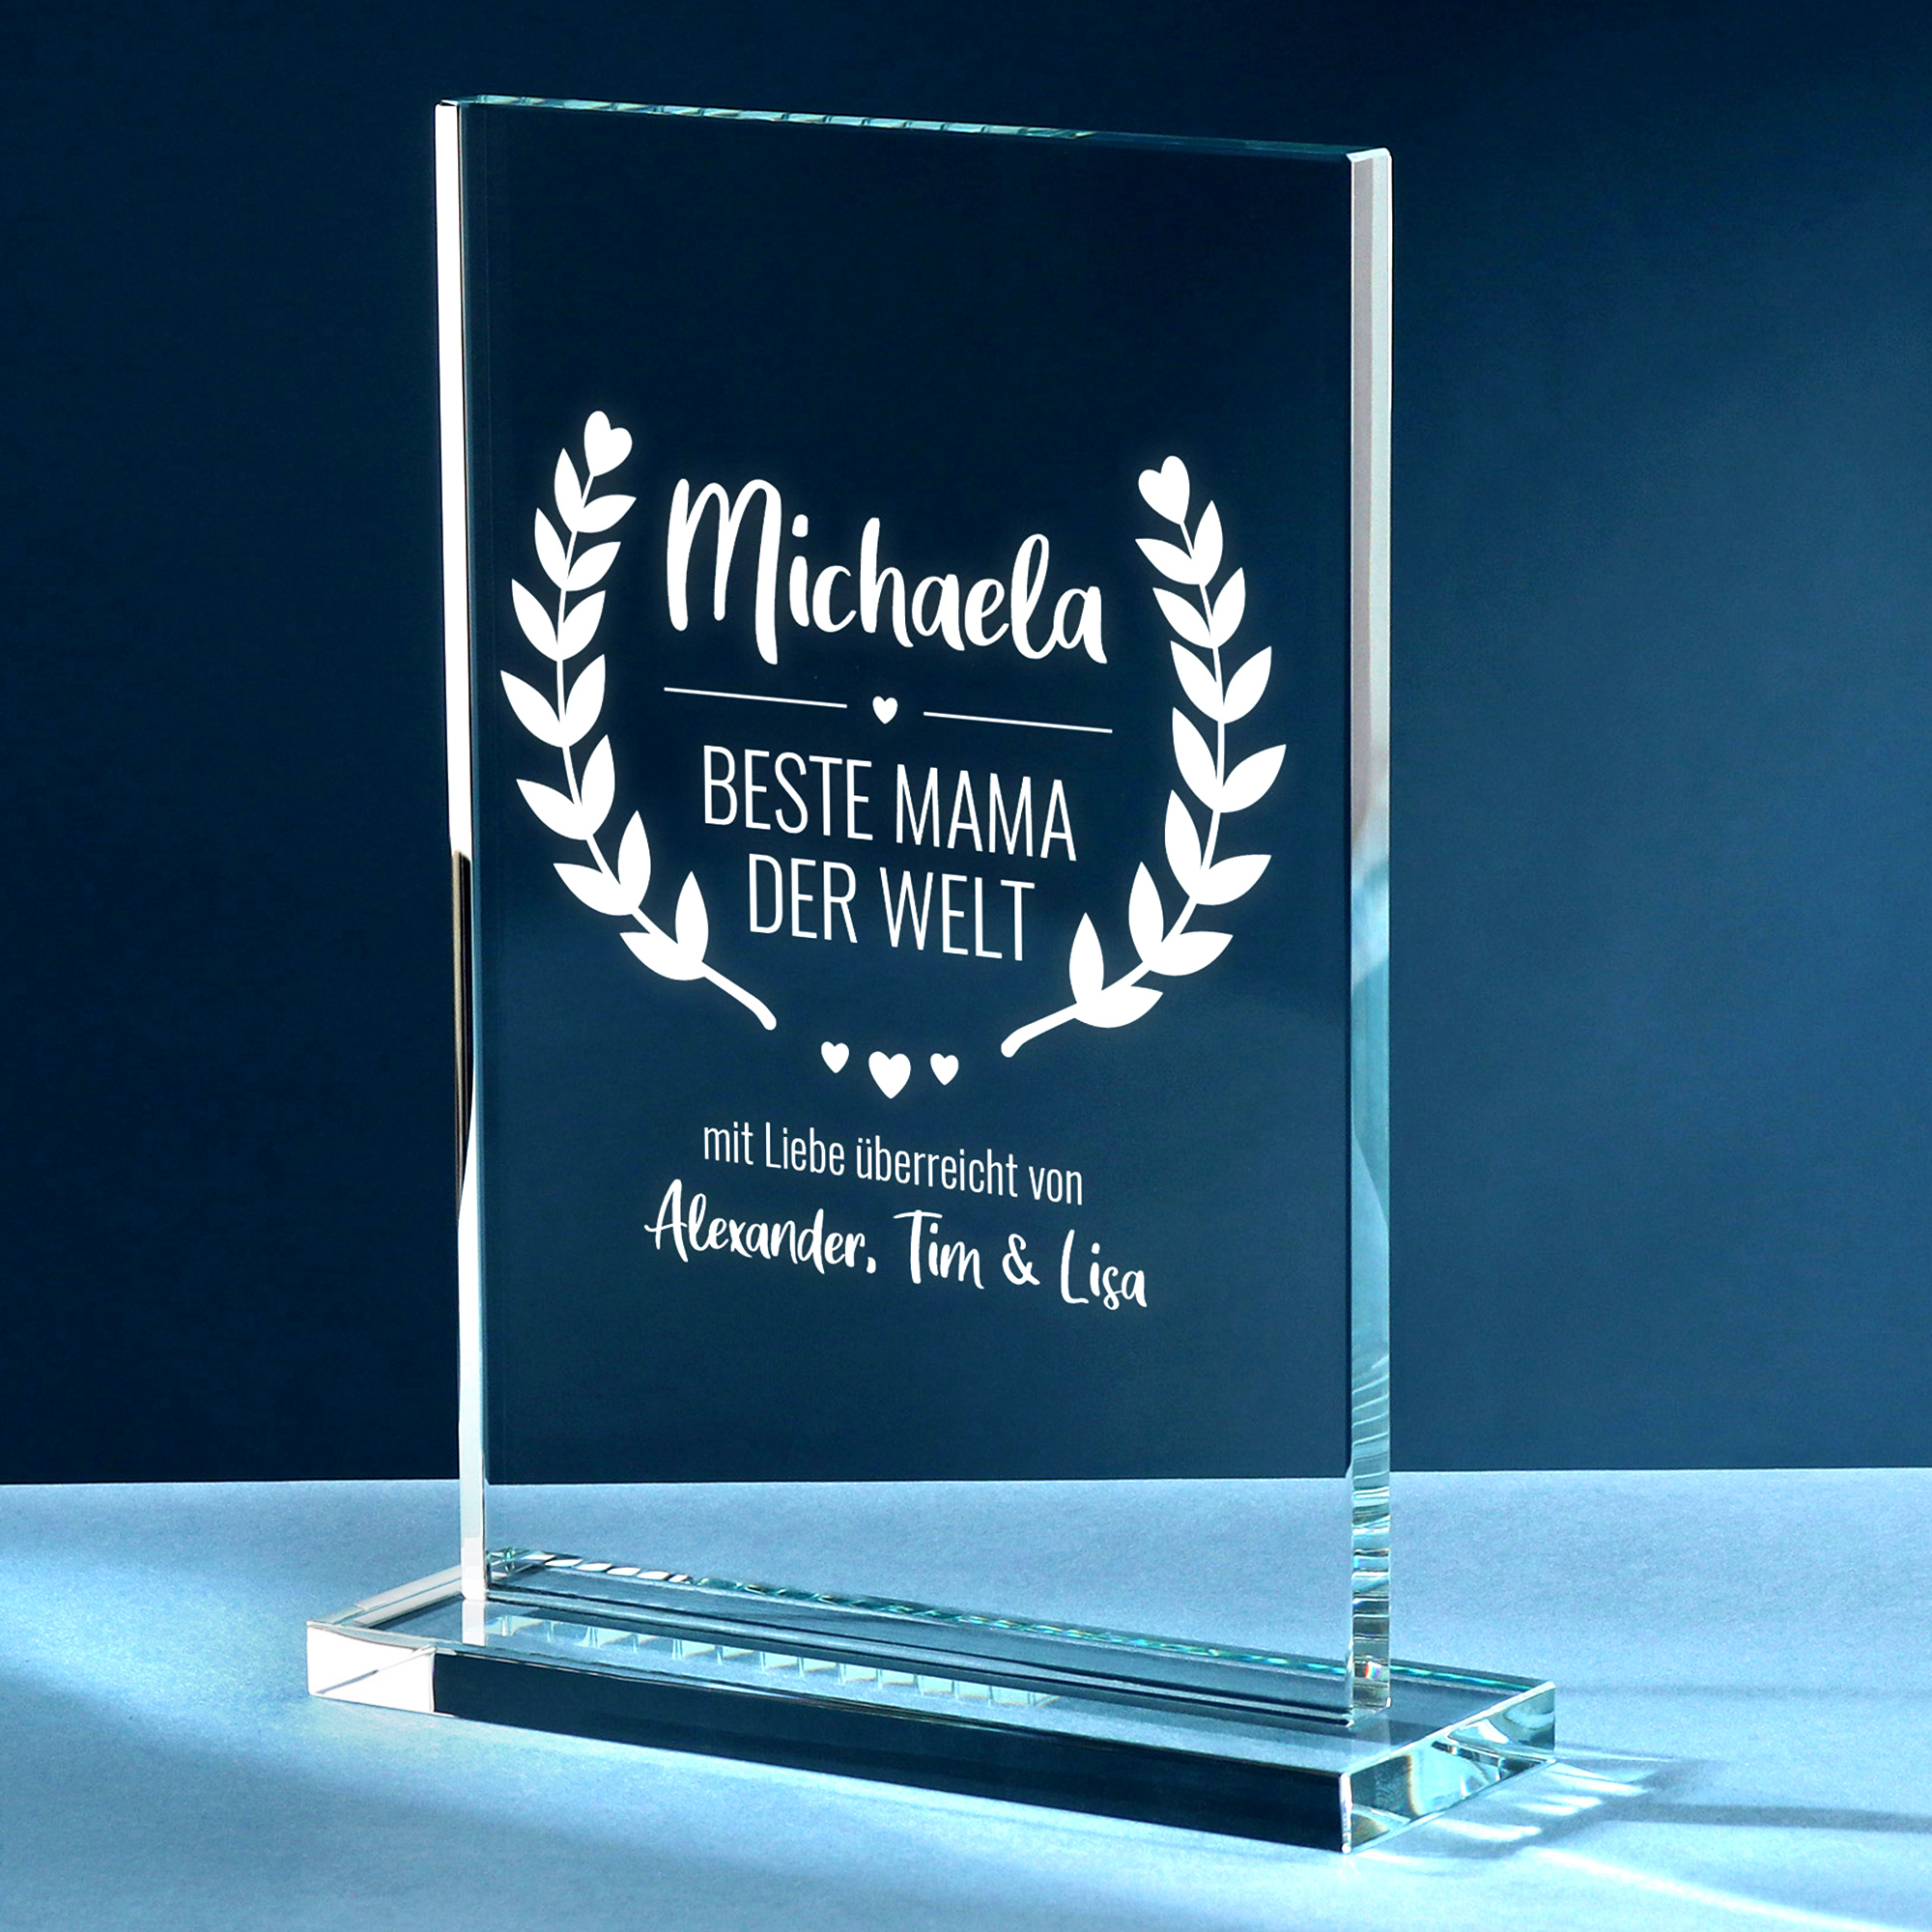 Personalisierter Glaspokal - Auszeichnung für Beste Mama 2162-167-MZ